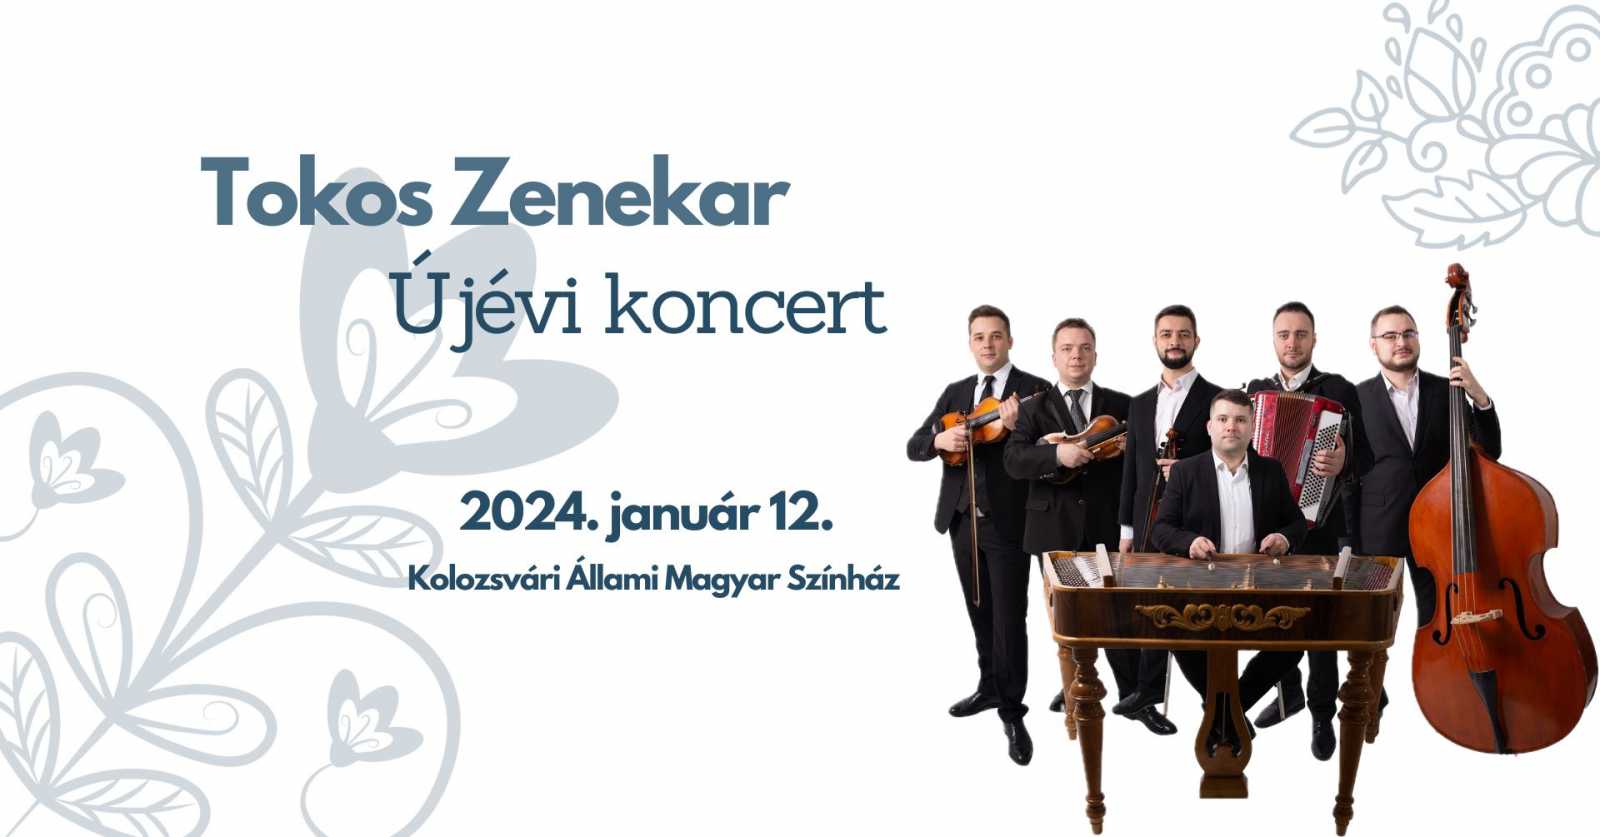 Forrás: Újévi koncert a Tokos zenekarral, Facebook-esemény